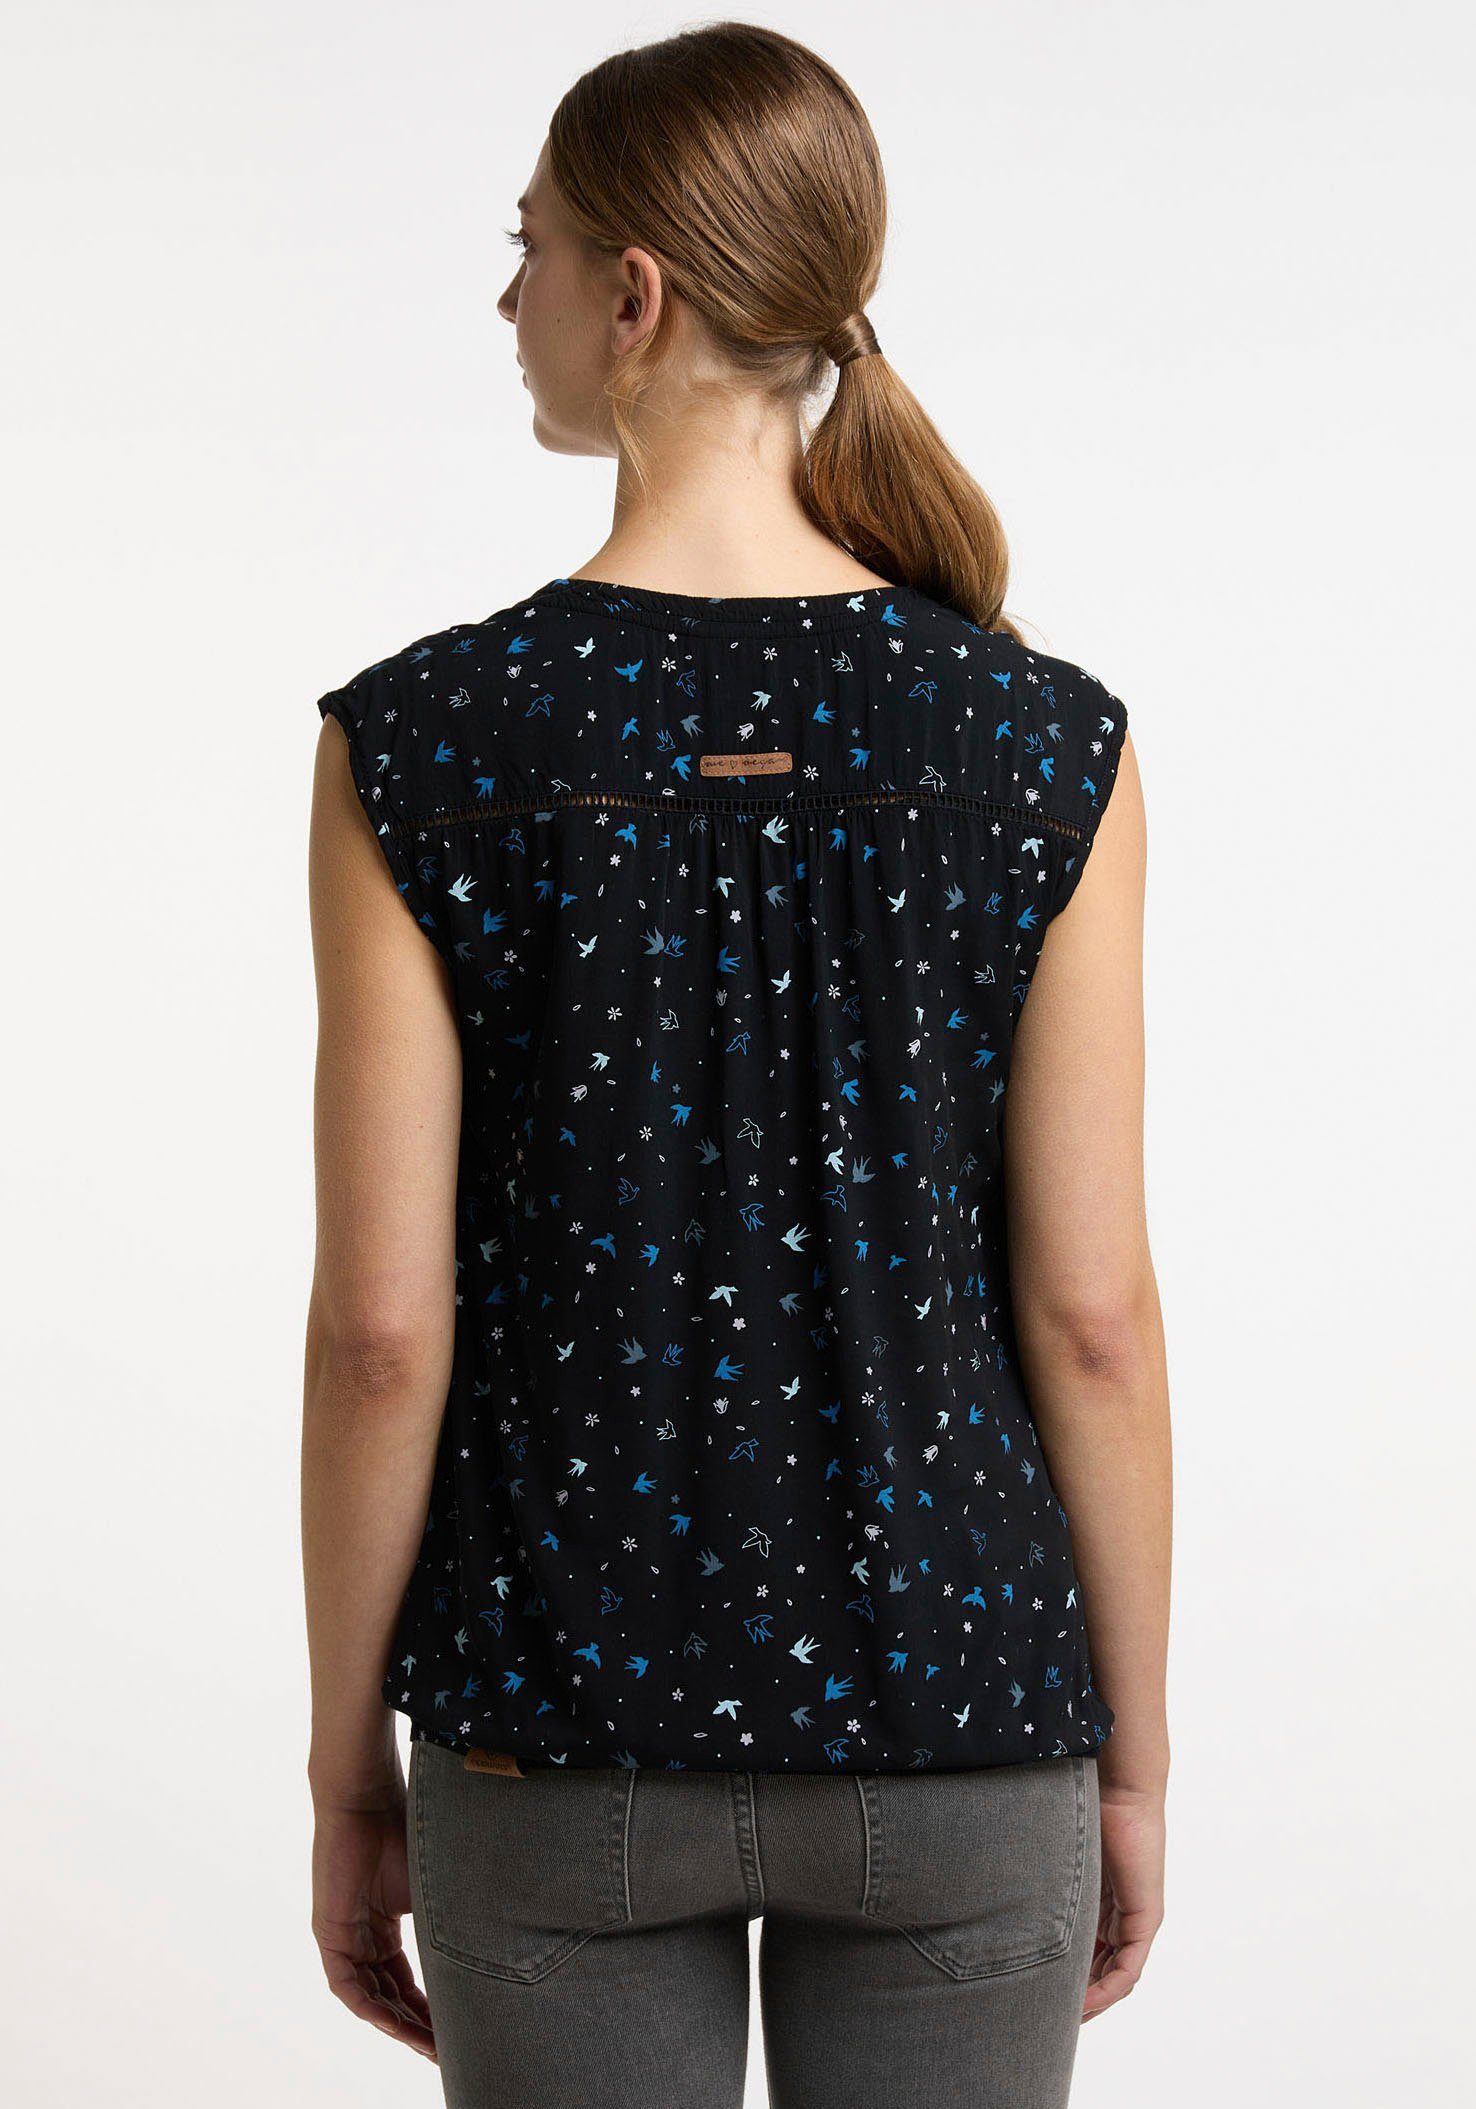 Design Ragwear im Blusenshirt A All-Over Print SALTTY BLACK trendigem